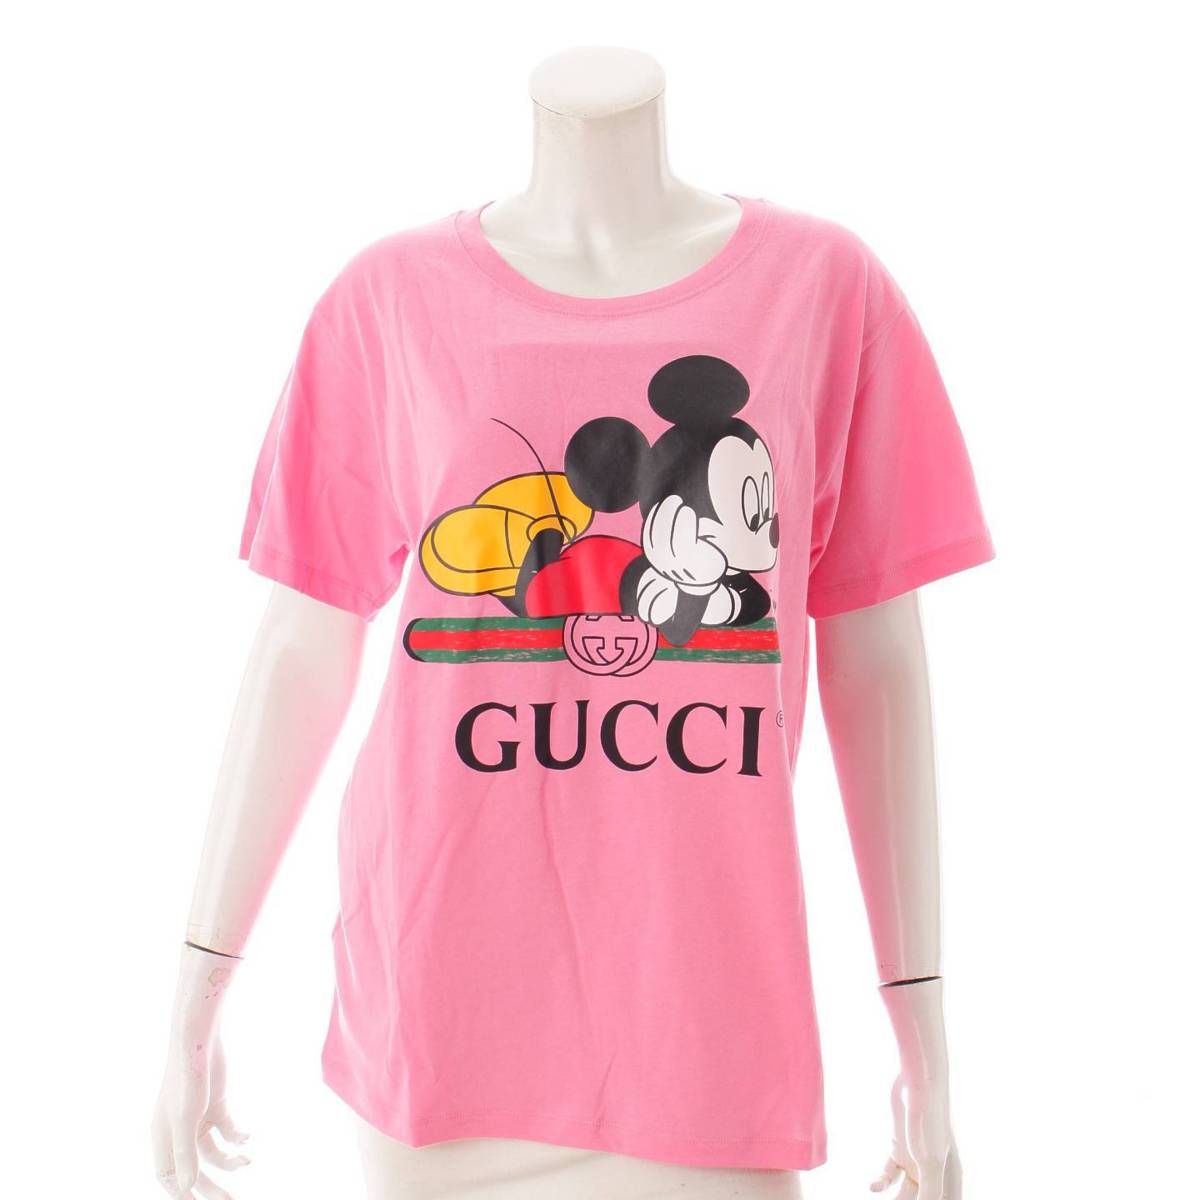 グッチ(Gucci) ディズニーコラボ オーバーサイズ Tシャツ ミッキーマウス 492347 ピンク XS 中古 通販 retro レトロ